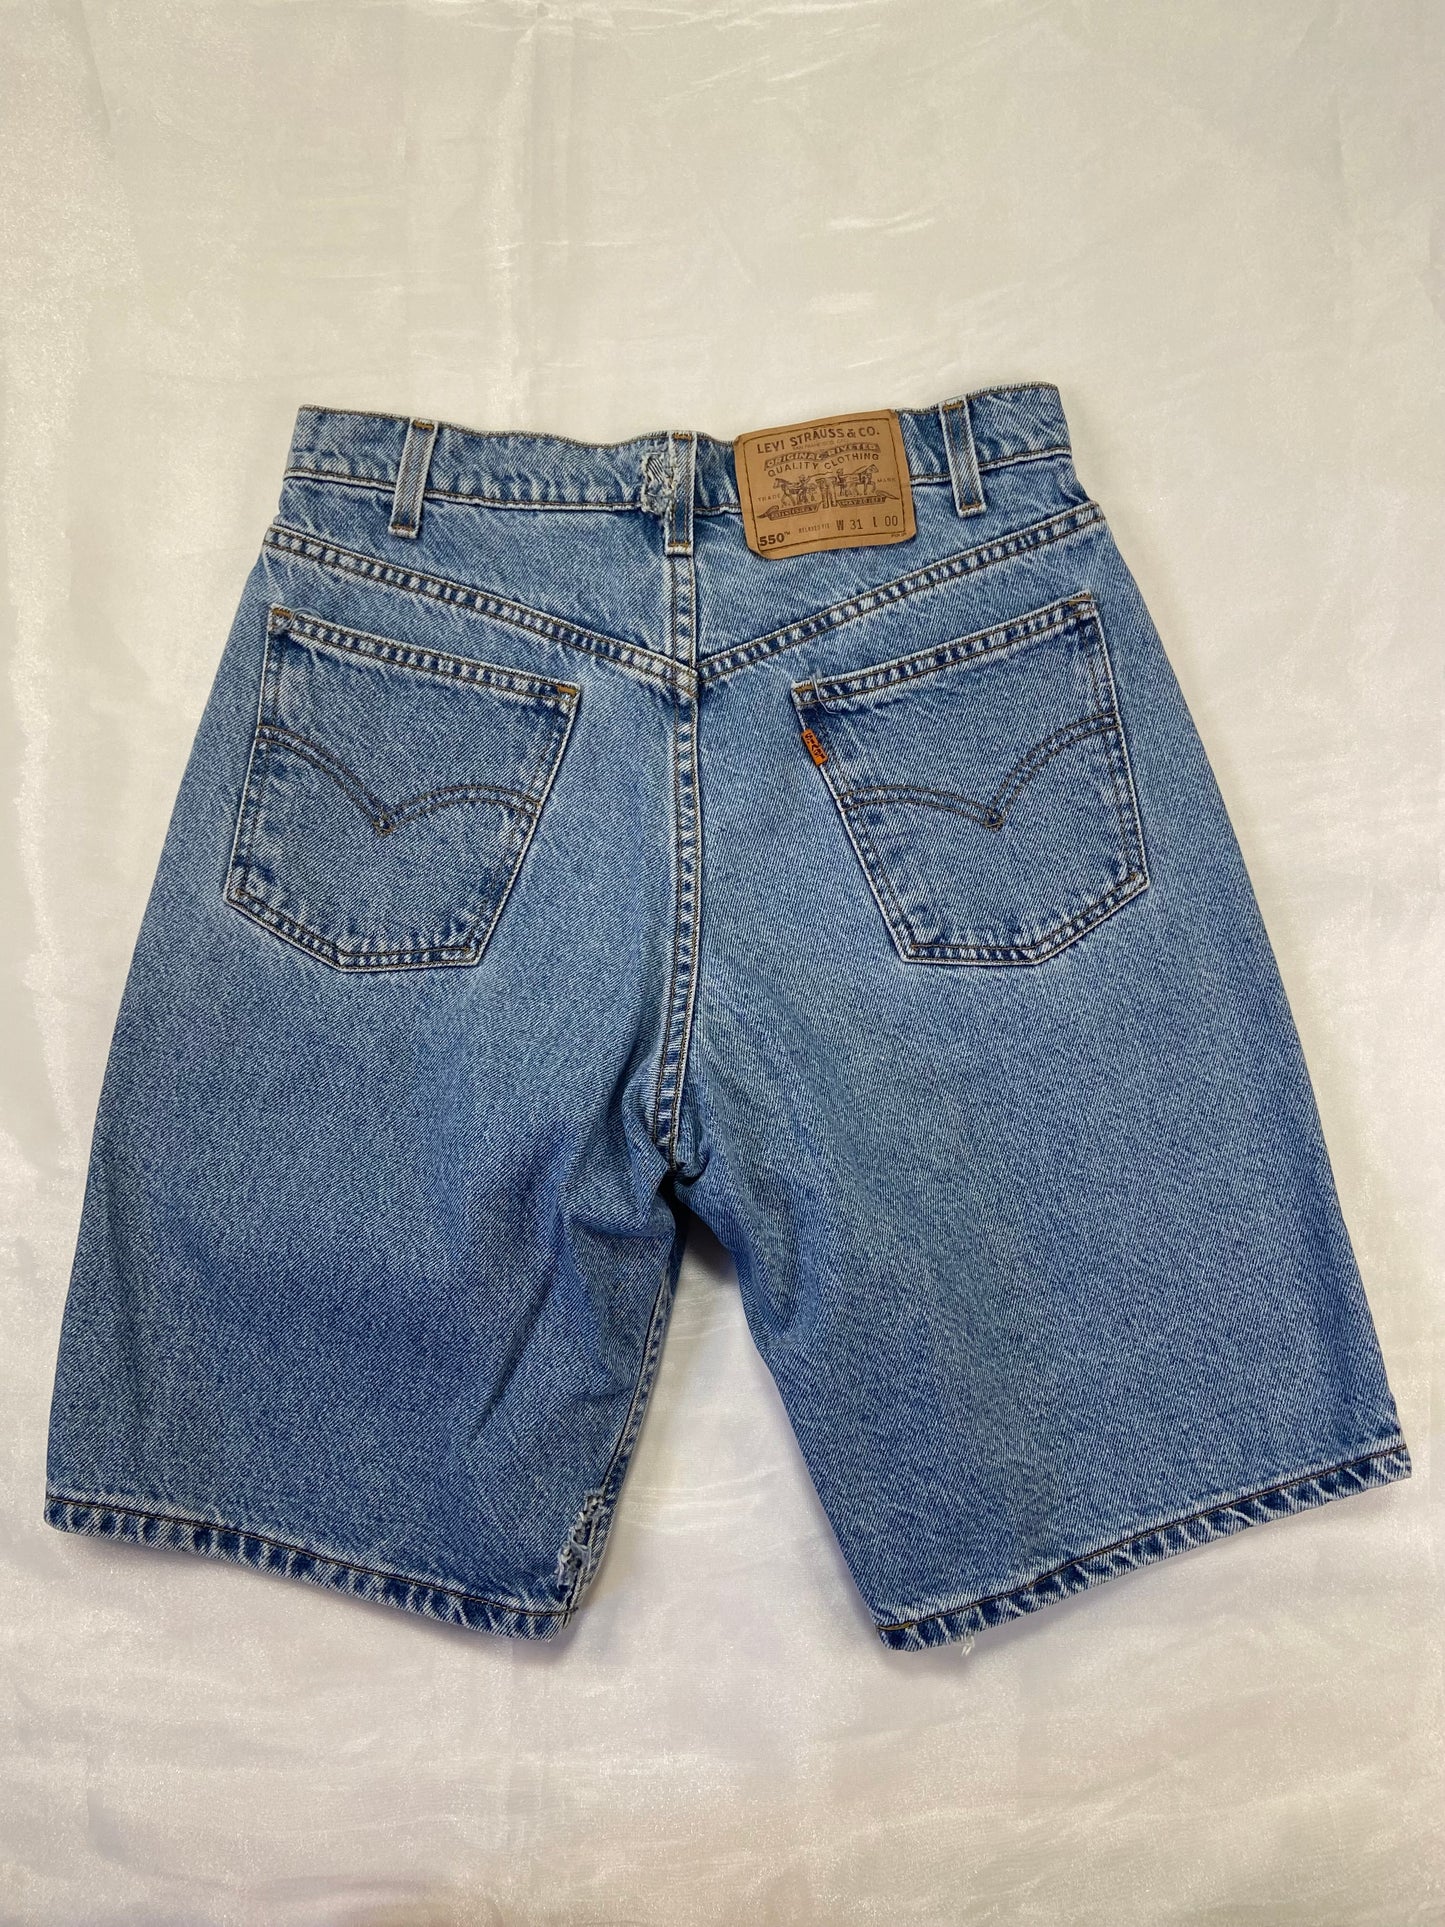 550 Levi’s Medium Wash Denim Shorts - 29”